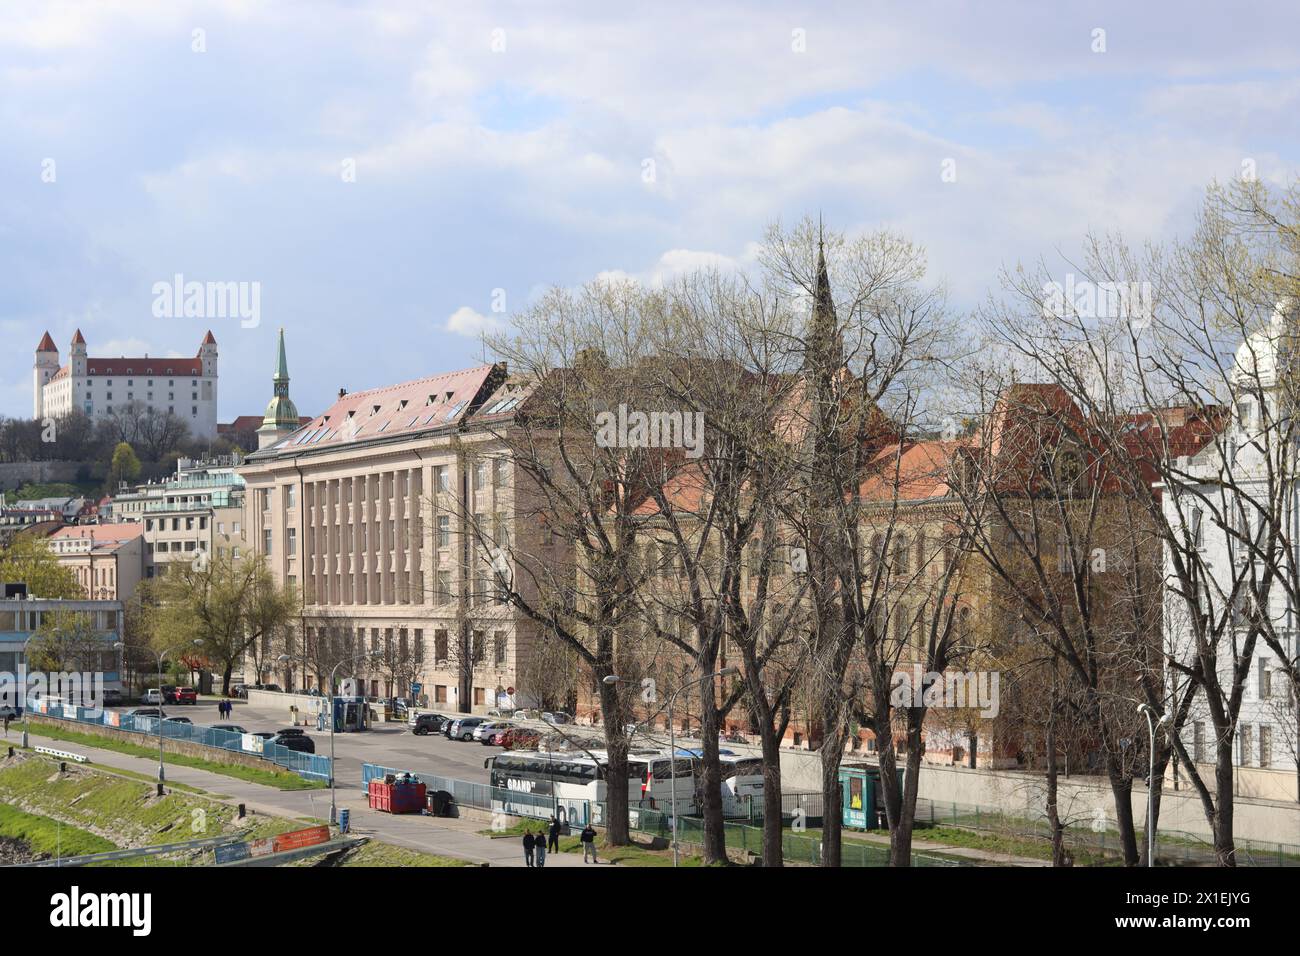 Architecture de Bratislava, Slovaquie. Vue sur la vieille ville depuis le Danube. Jour de printemps nuageux. Photo panoramique de beaux bâtiments anciens. Banque D'Images